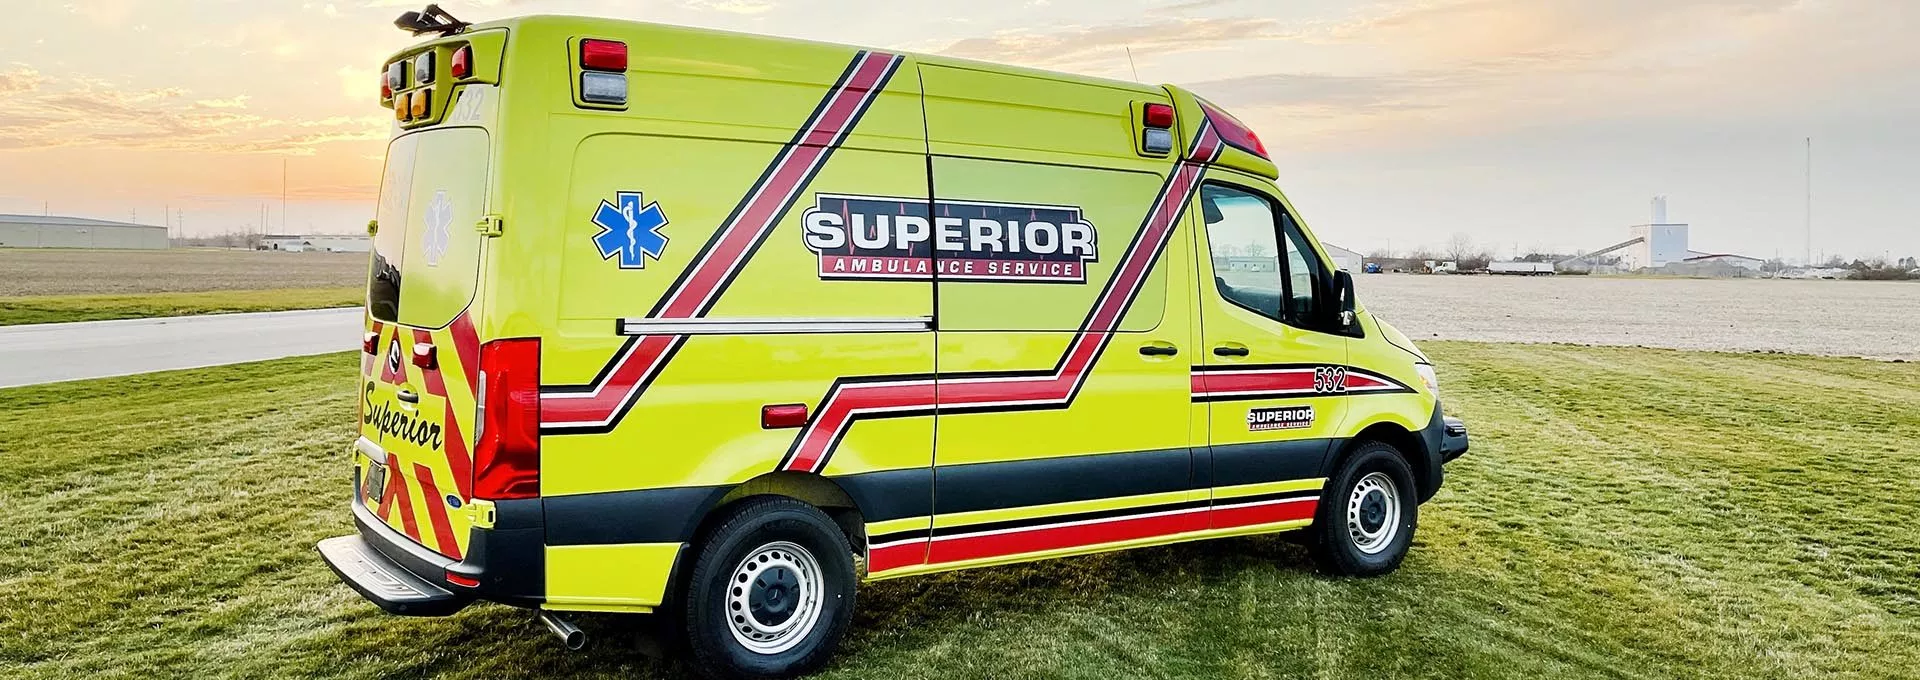 Superior Ambulance in cornfield